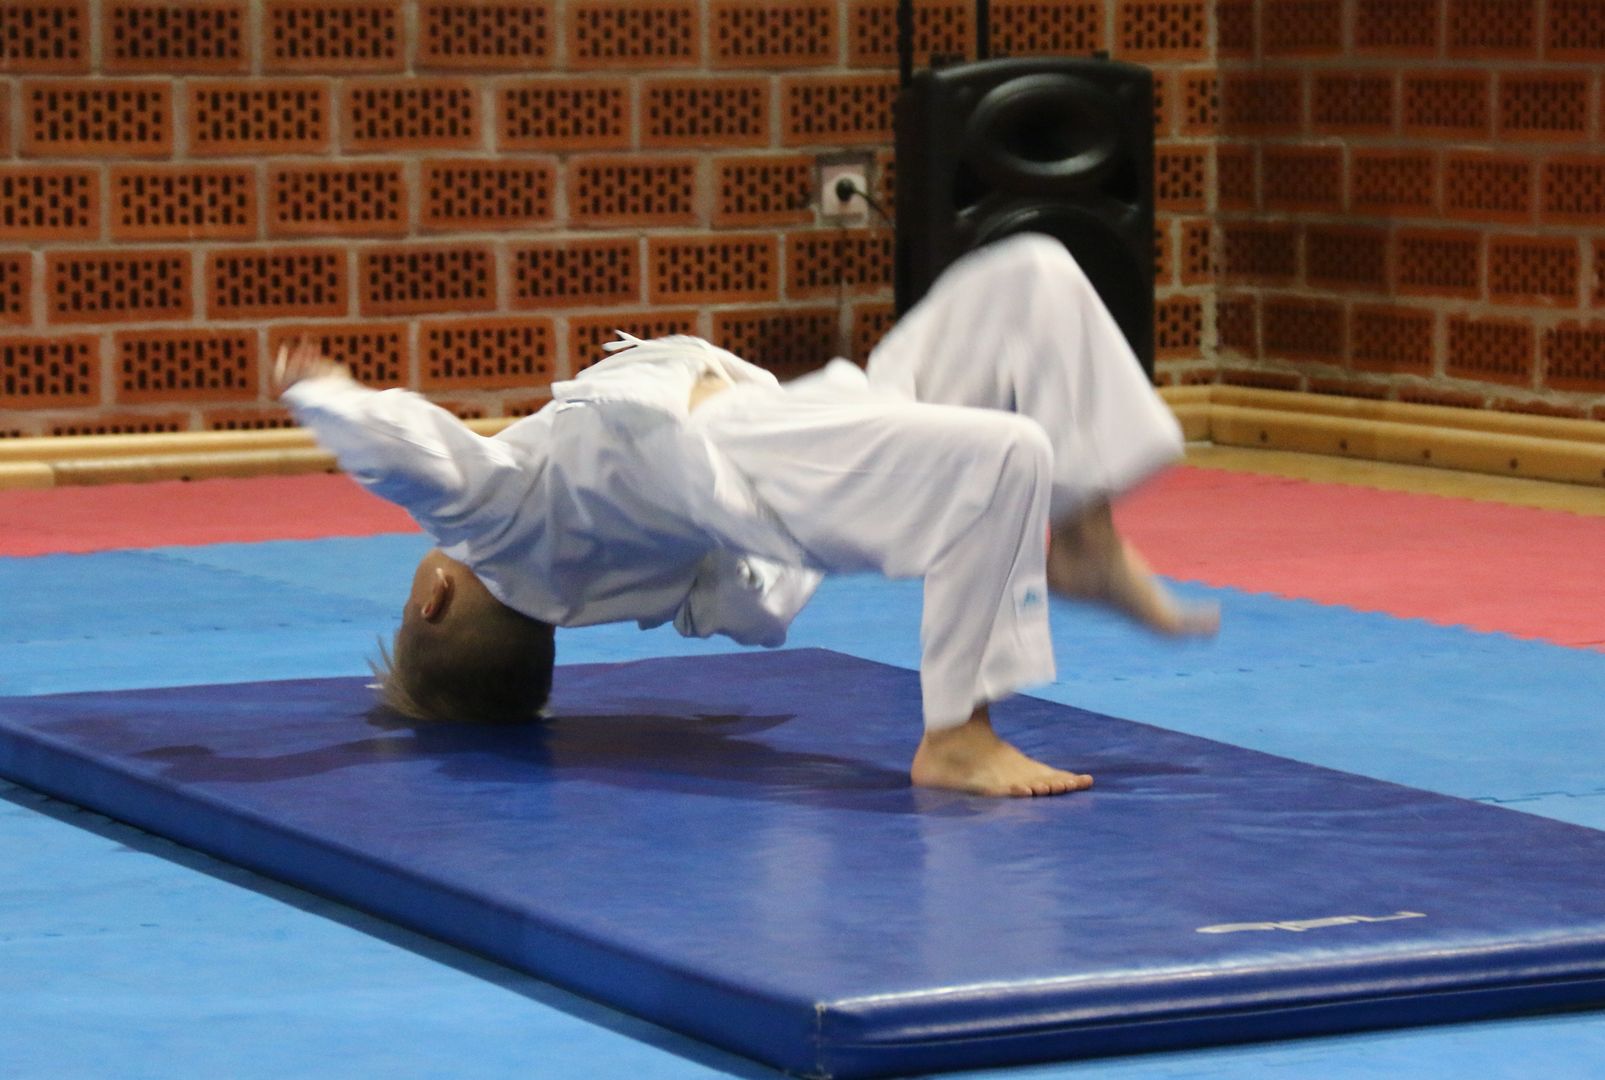 Članovi Karate kluba Đurđevac jedva dočekali povratak treninzima i svojoj dvorani